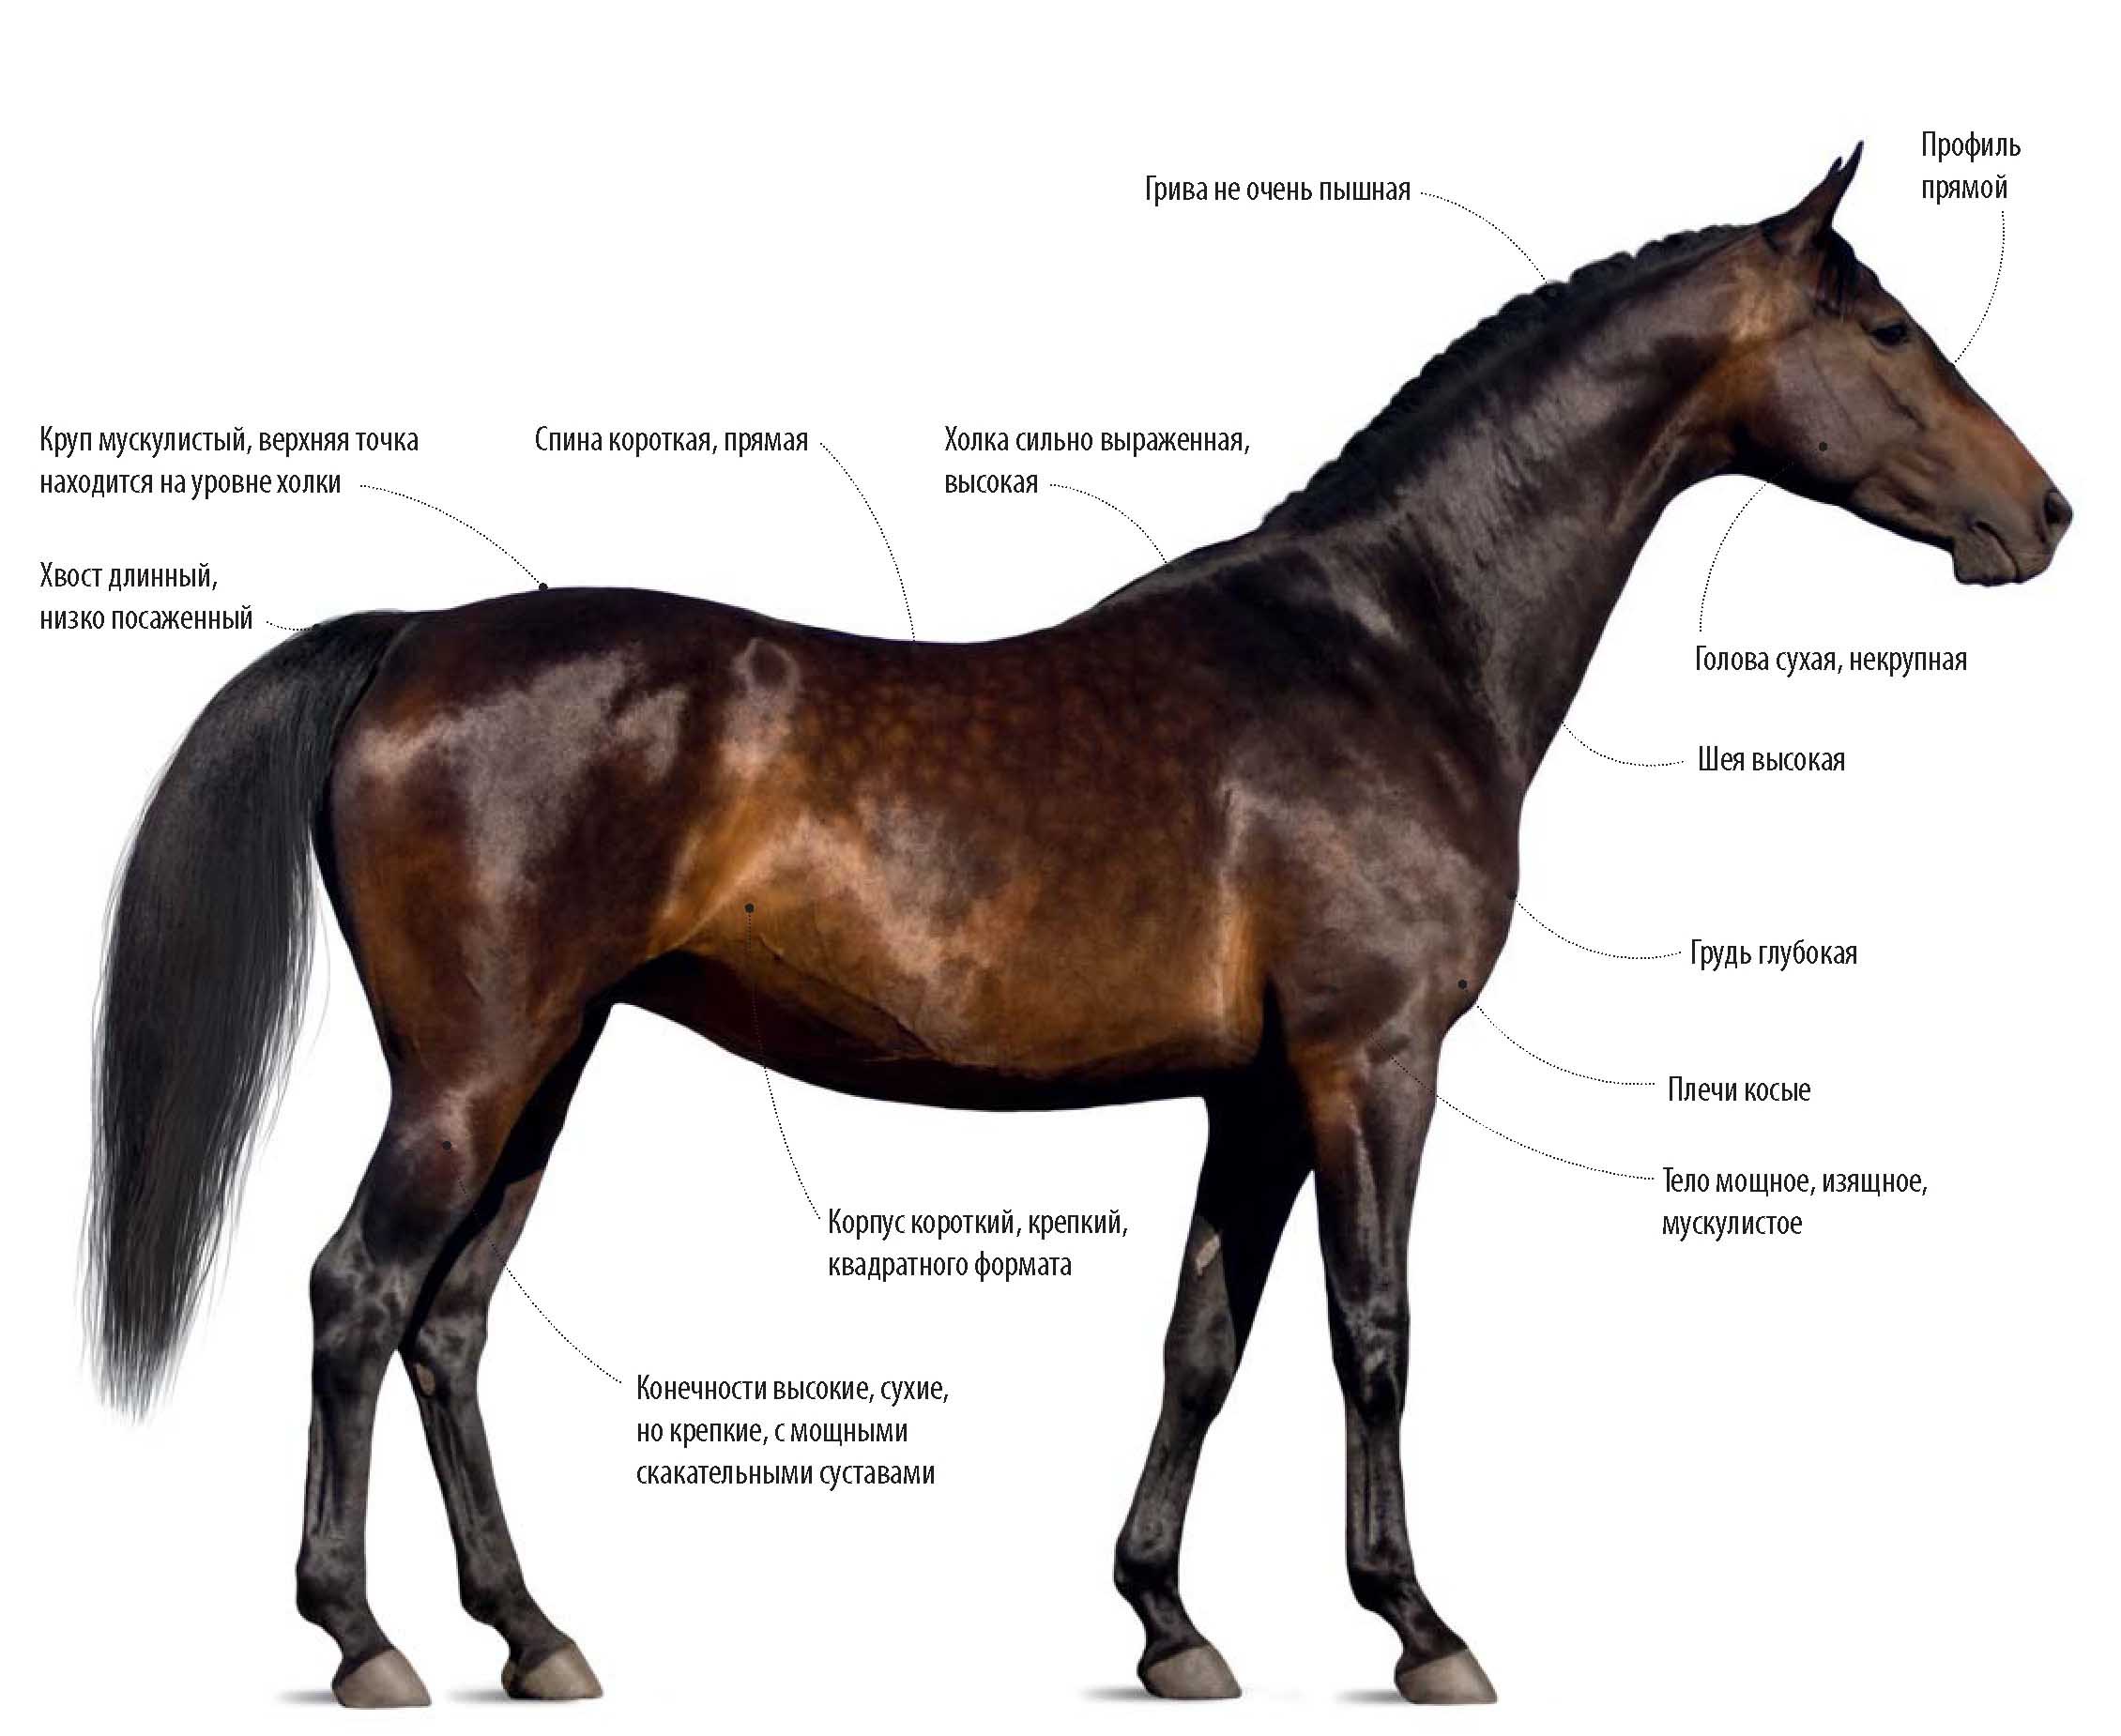 Чистокровная английская верховая порода лошади.